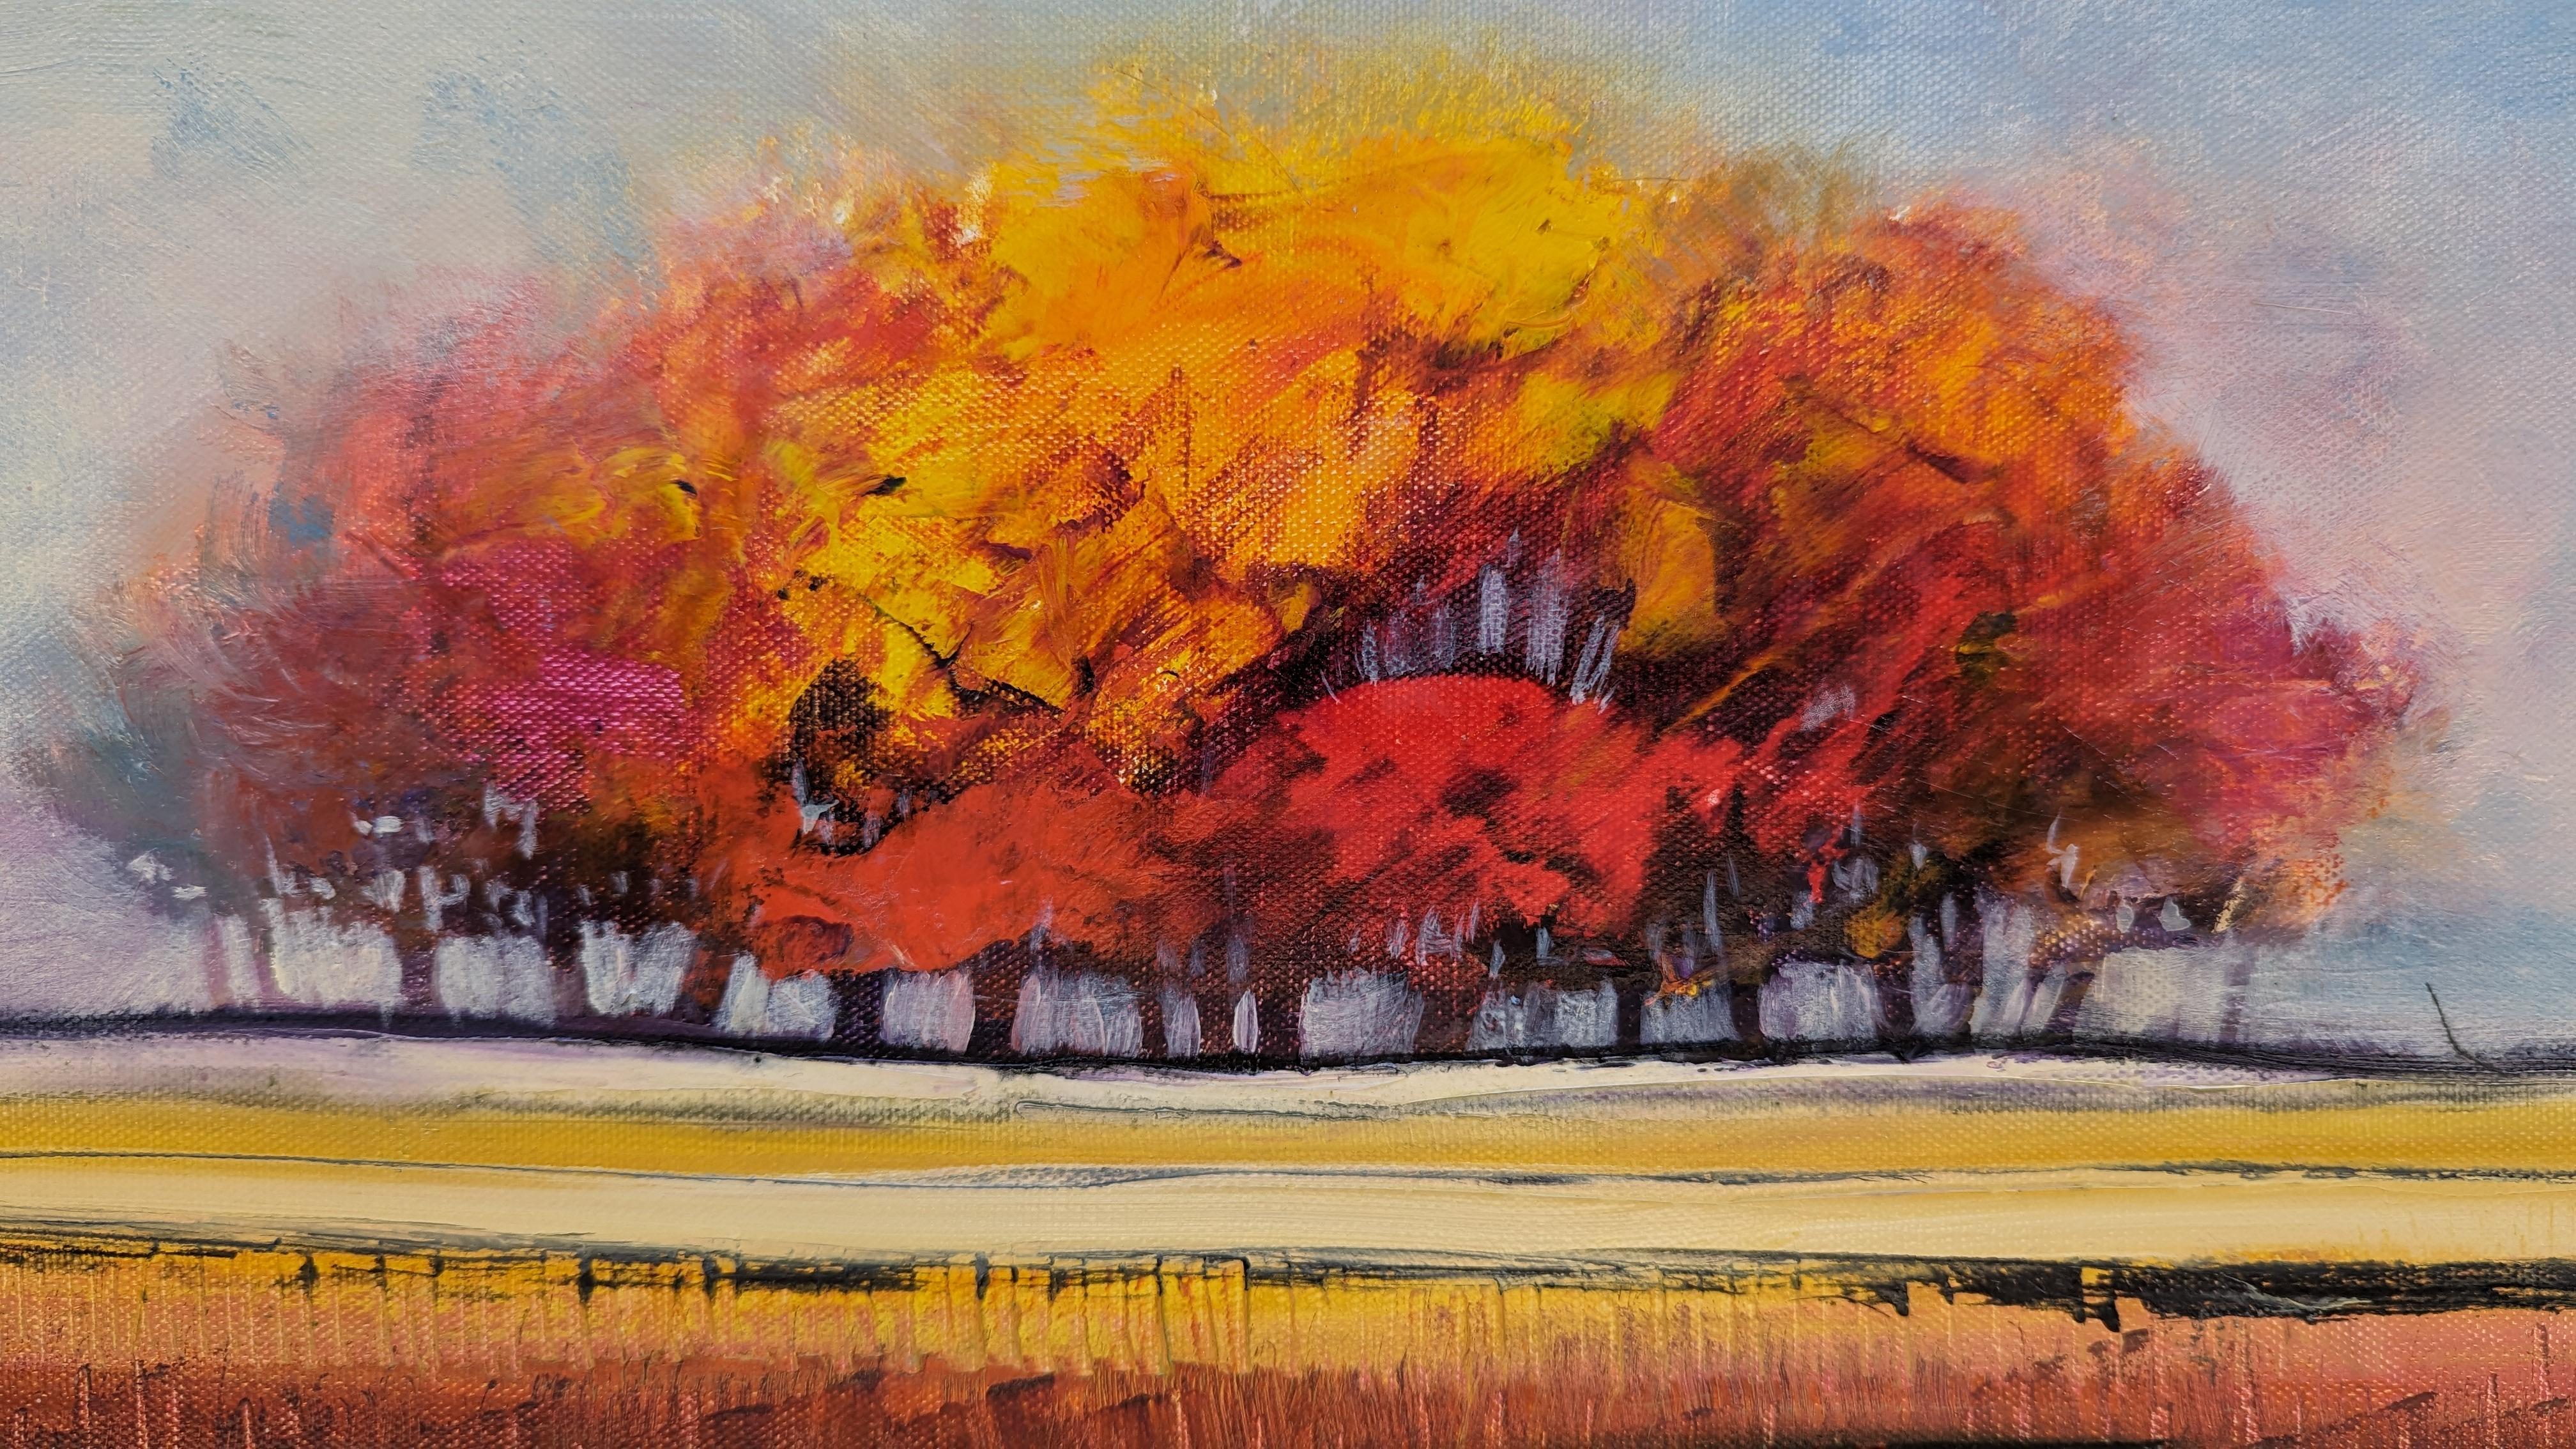 <p>Kommentare des Künstlers<br>Eine Gruppe von Bäumen steht inmitten eines weiten Feldes, ihre Baumkronen verschmelzen zu einer einheitlichen Präsenz. Gegen die Kühle des blauen Himmels bringen die orangefarbenen Blätter Wärme und Lebendigkeit in